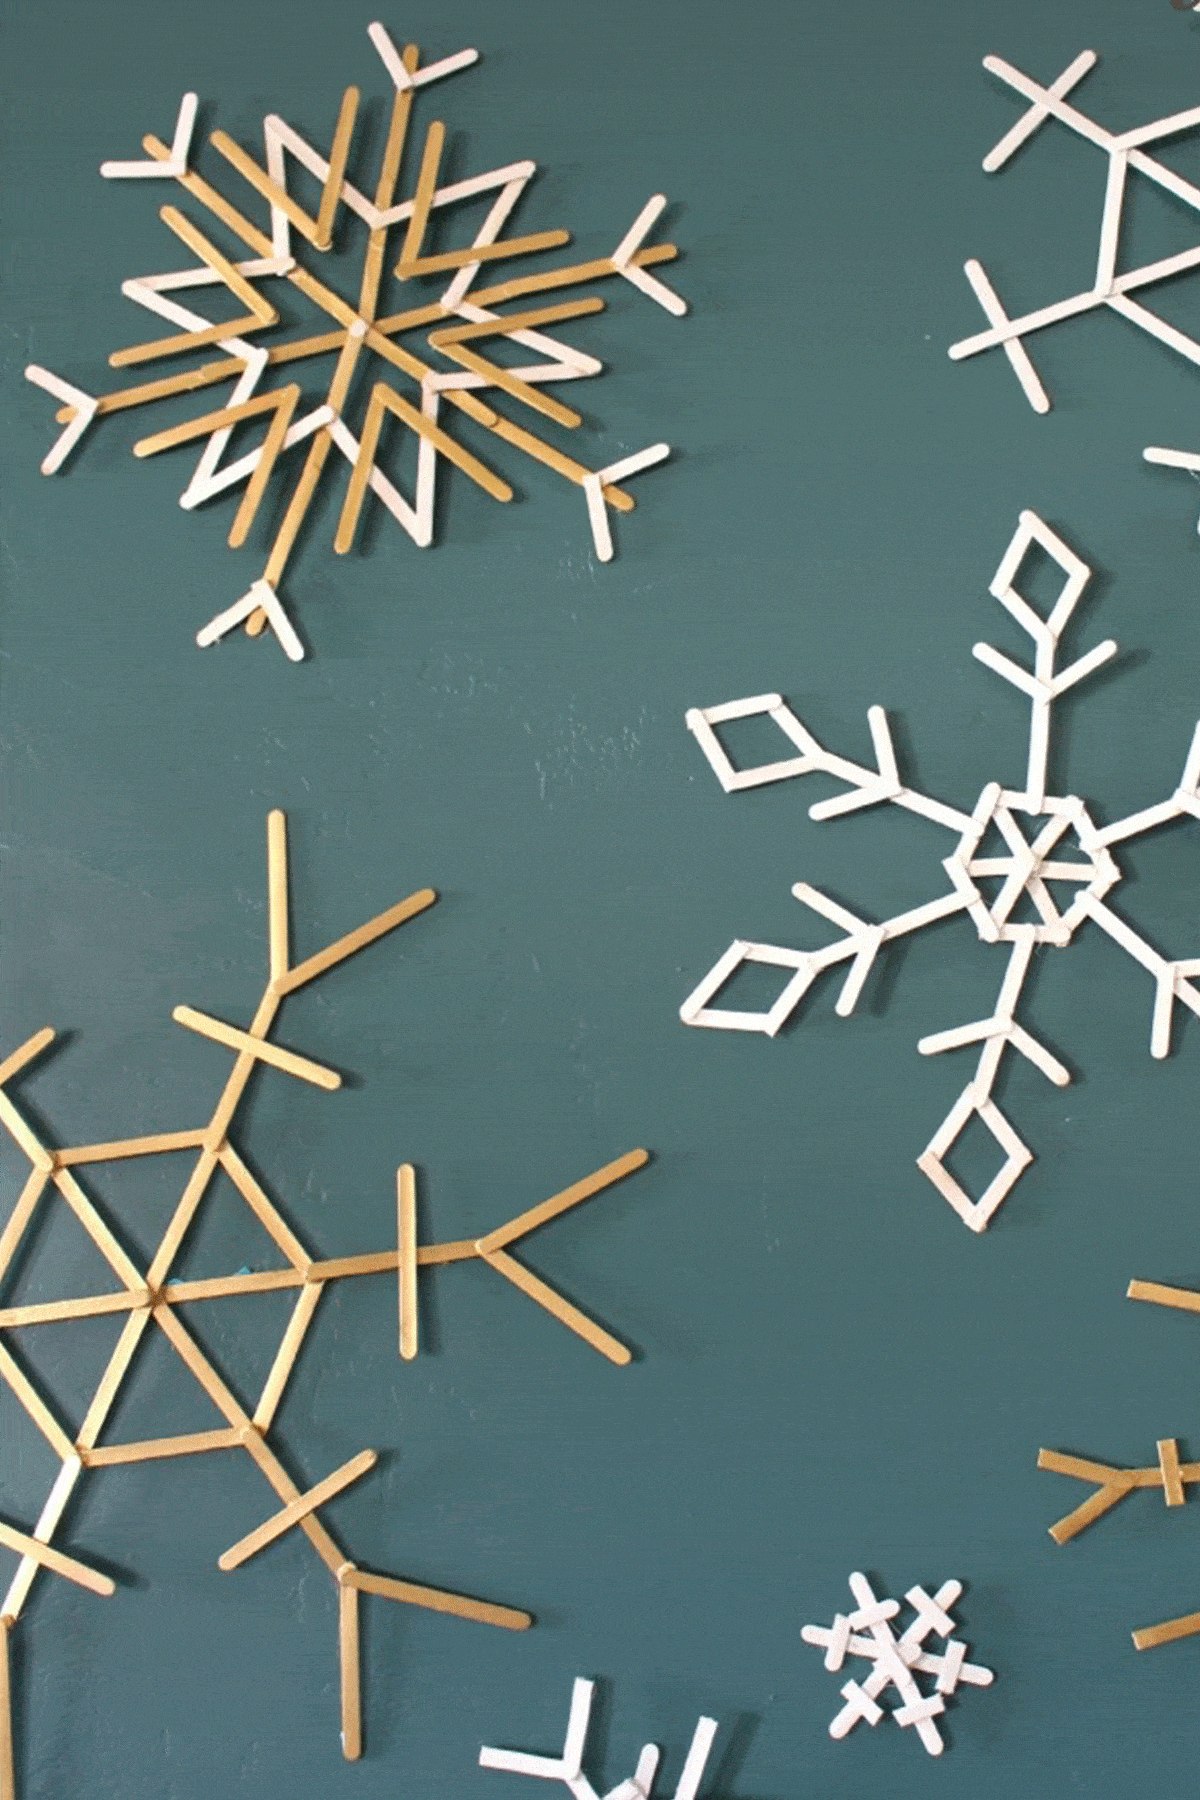 Popsicle stick snowflake diy